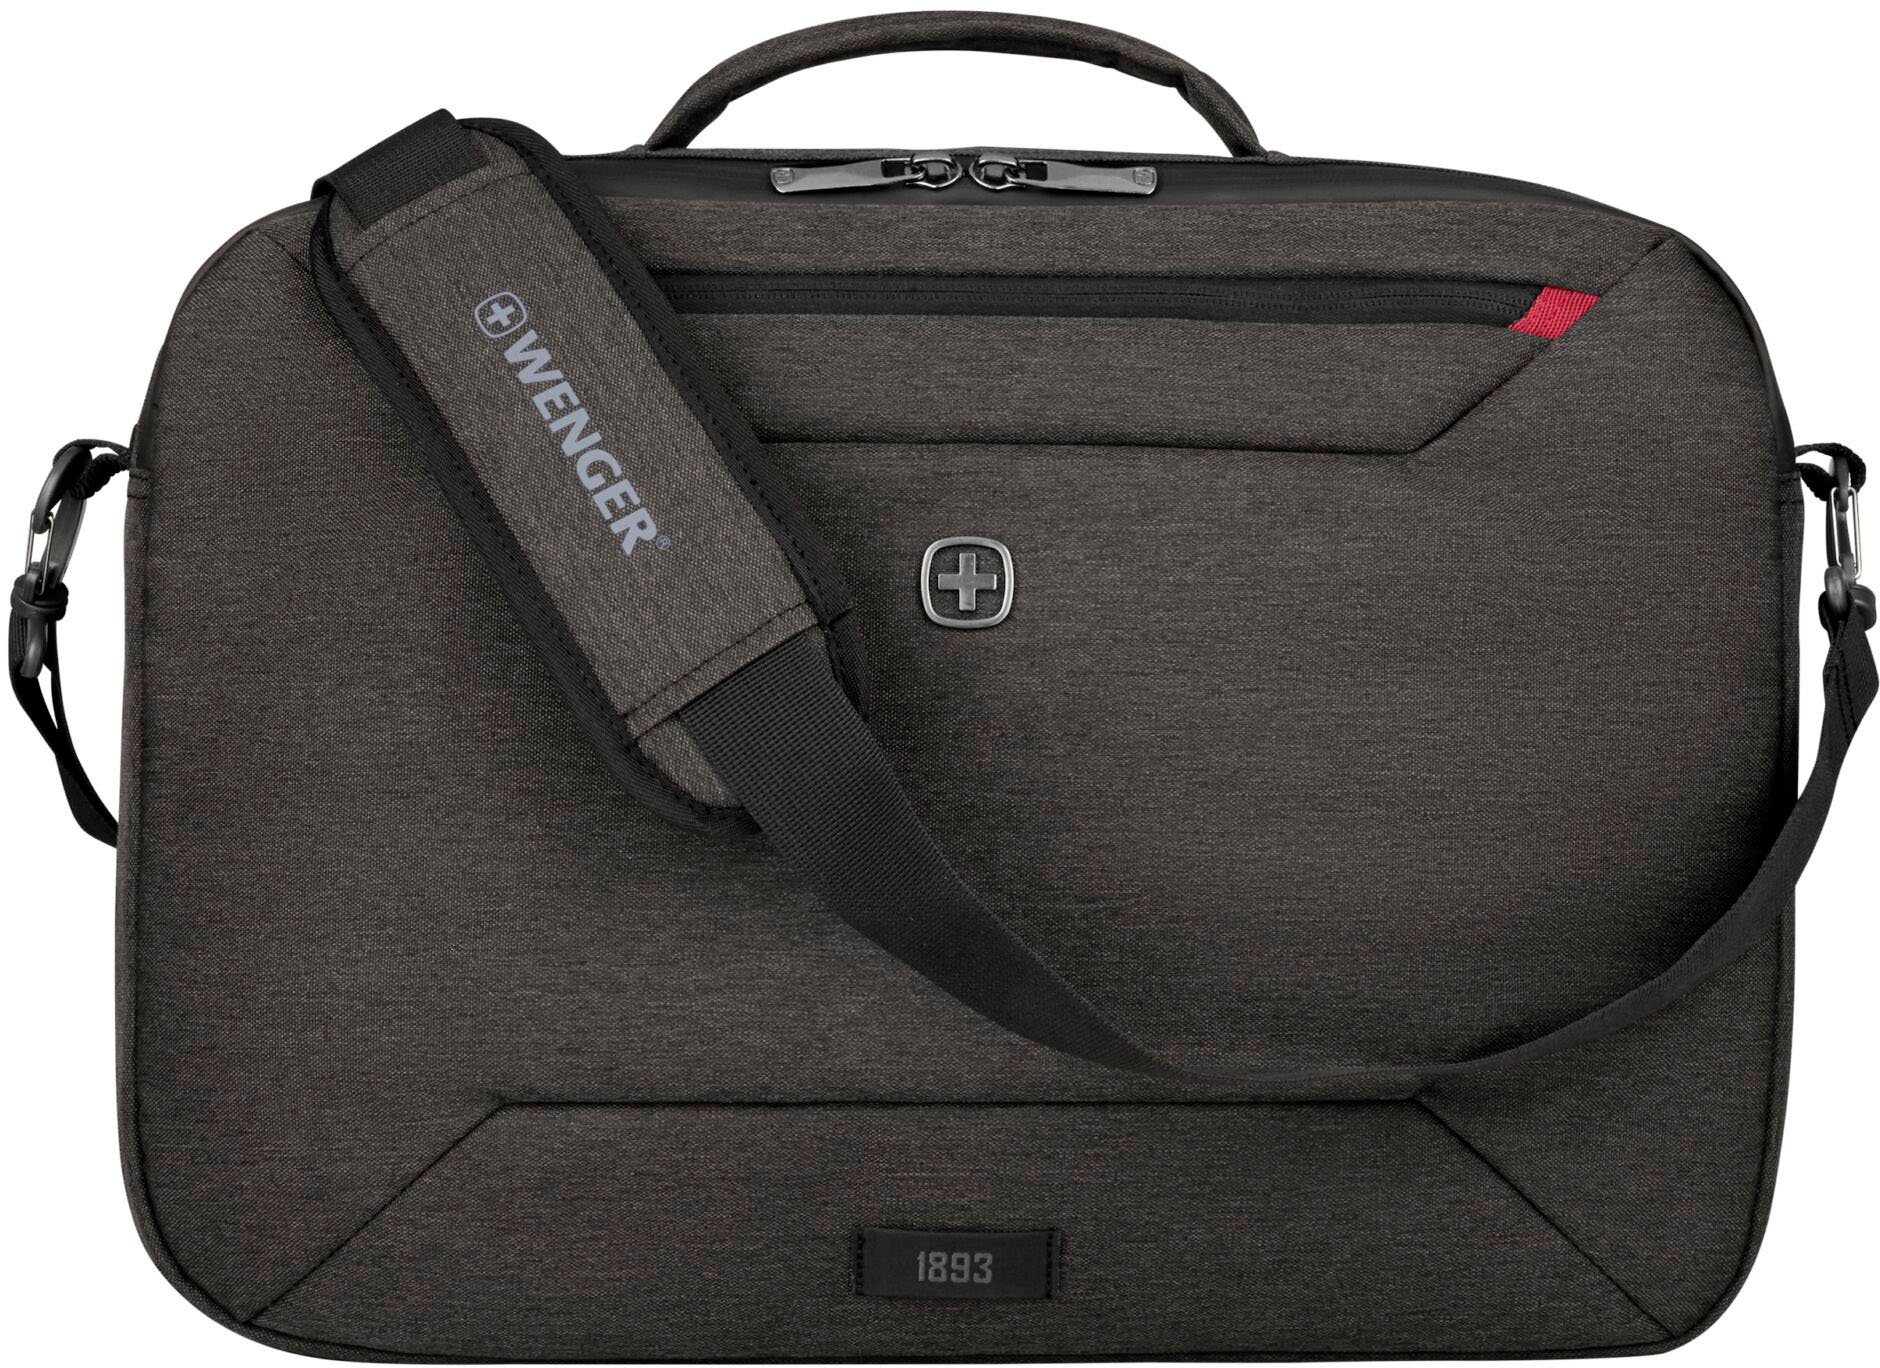 Wenger Laptoptasche Commute, grau, Kann mit Laptopfach, Rucksack tragbar, 16-Zoll getragen Rucksack verstaubarer auch Träger werden als als dank